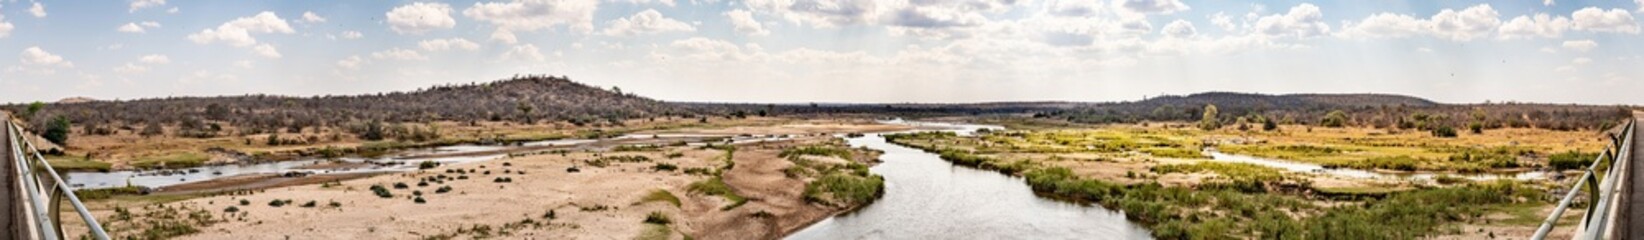 Olifants River (Limpopo) at Kruger National Park, South Africa